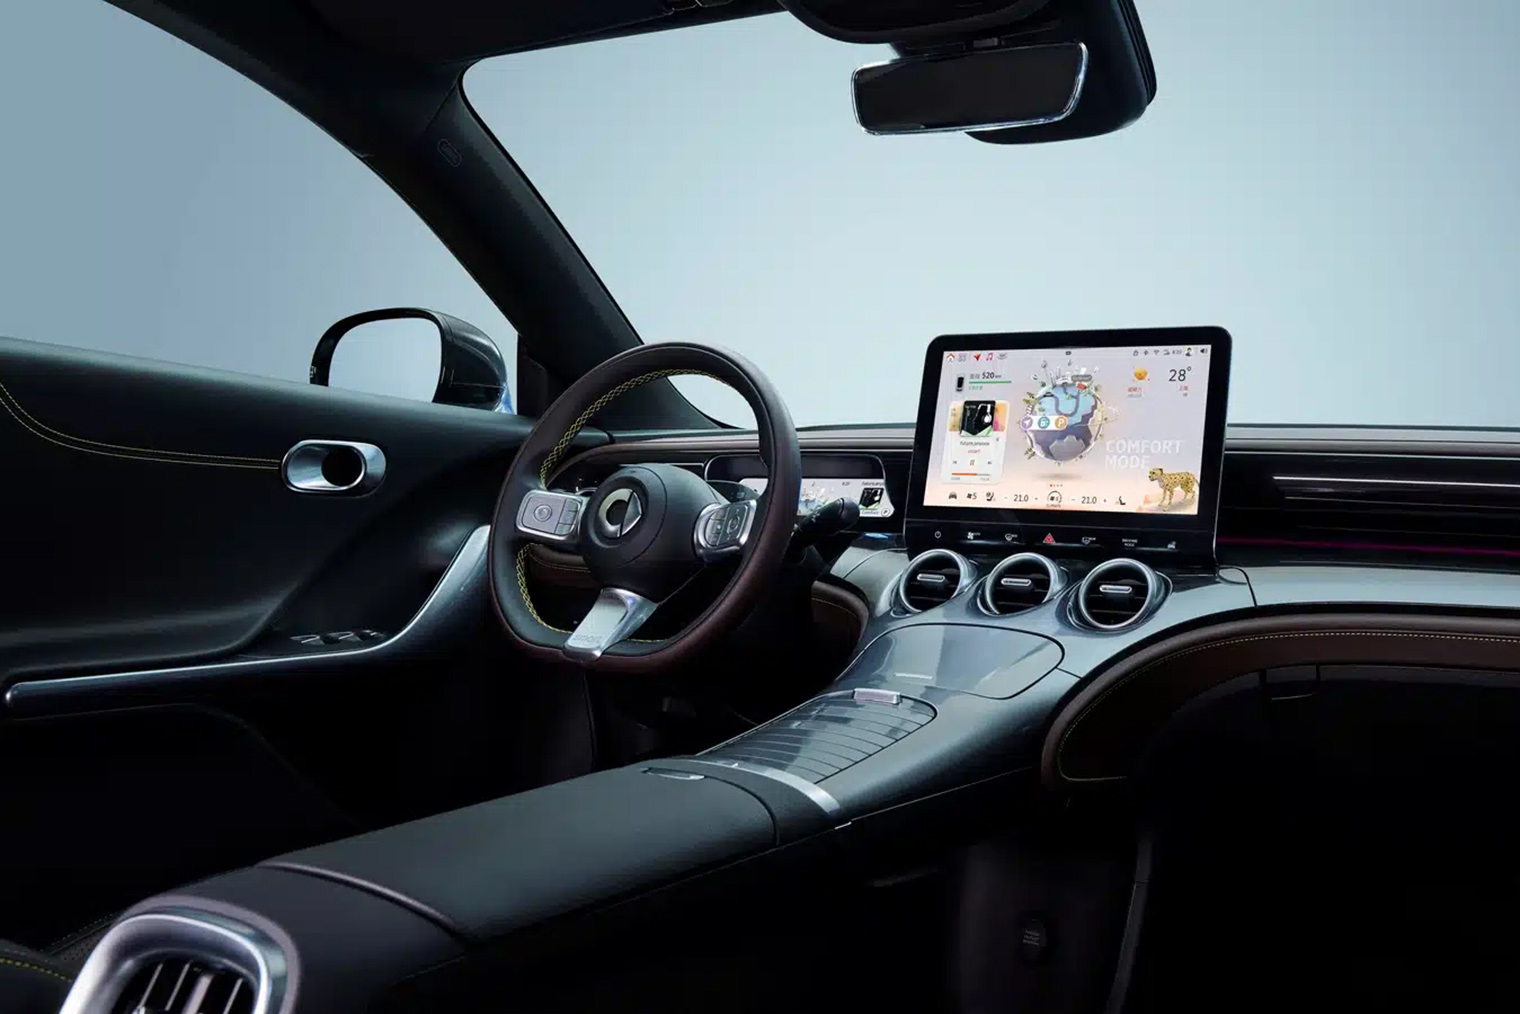 В интерьере новых Smart хорошо заметны черты Mercedes-Benz. Источник: actualidadmotor.com